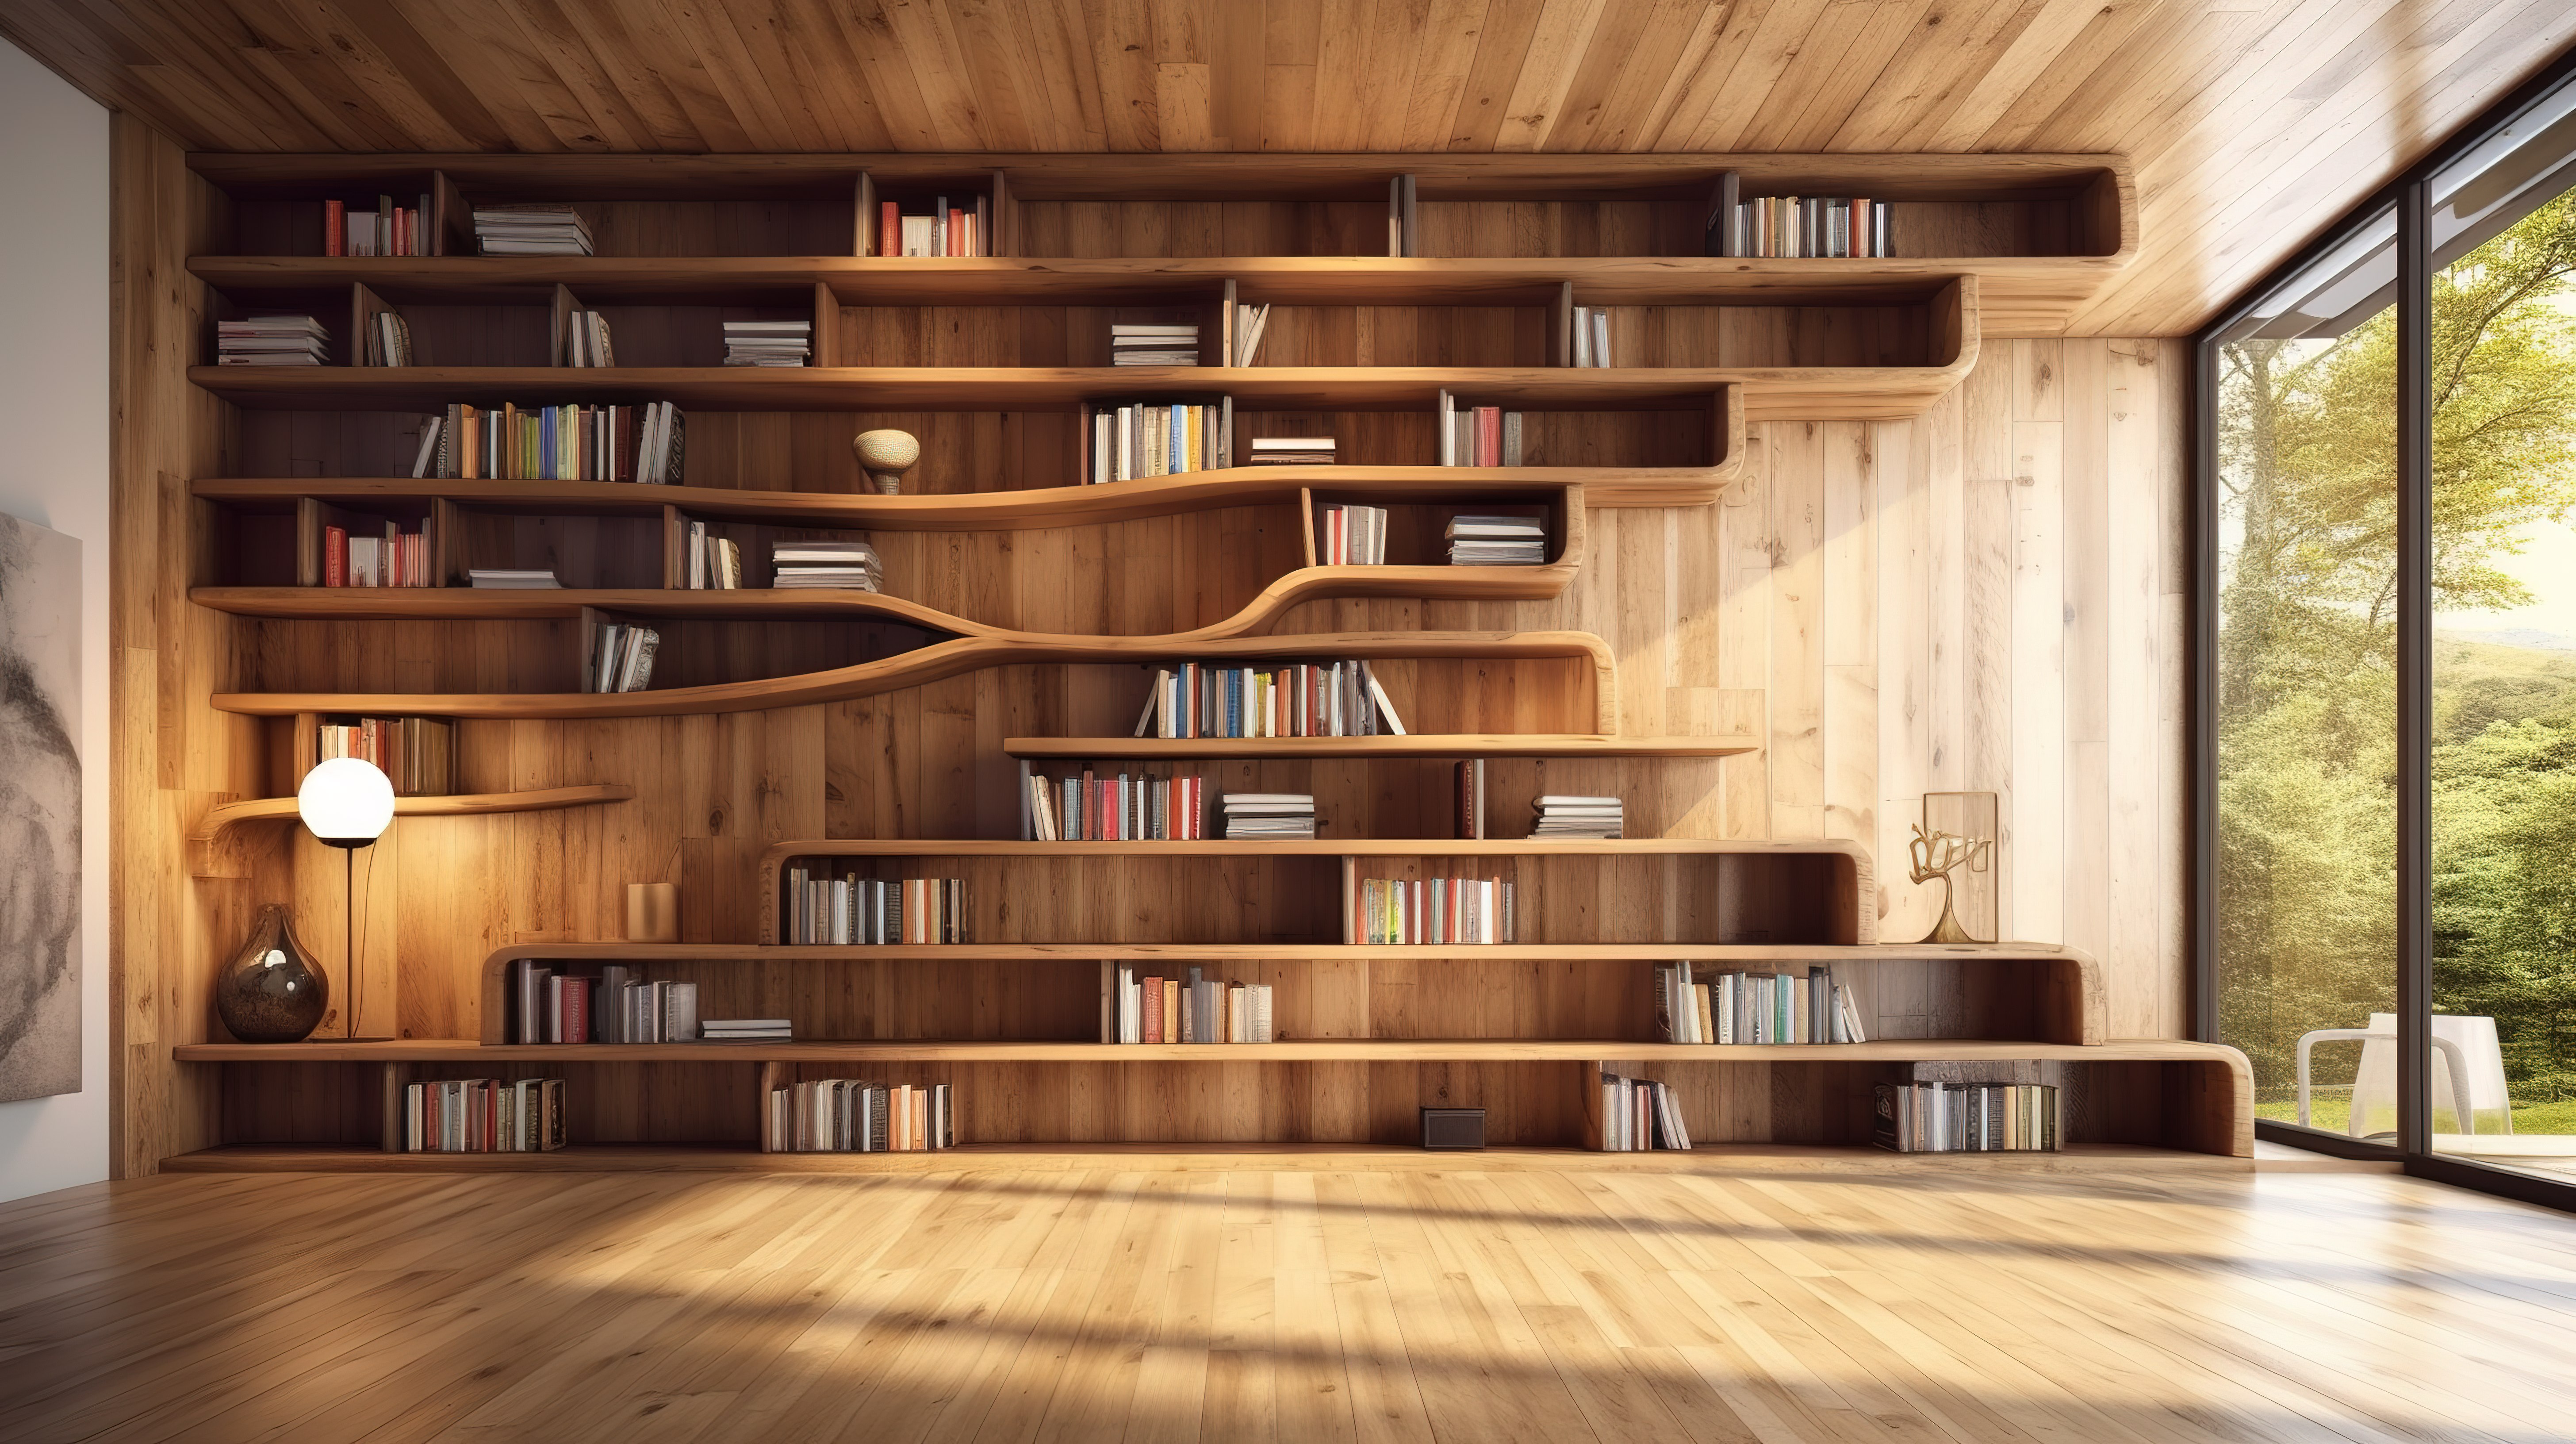 木质镶木地板的真实 3D 渲染和图书馆现代书架设计图片